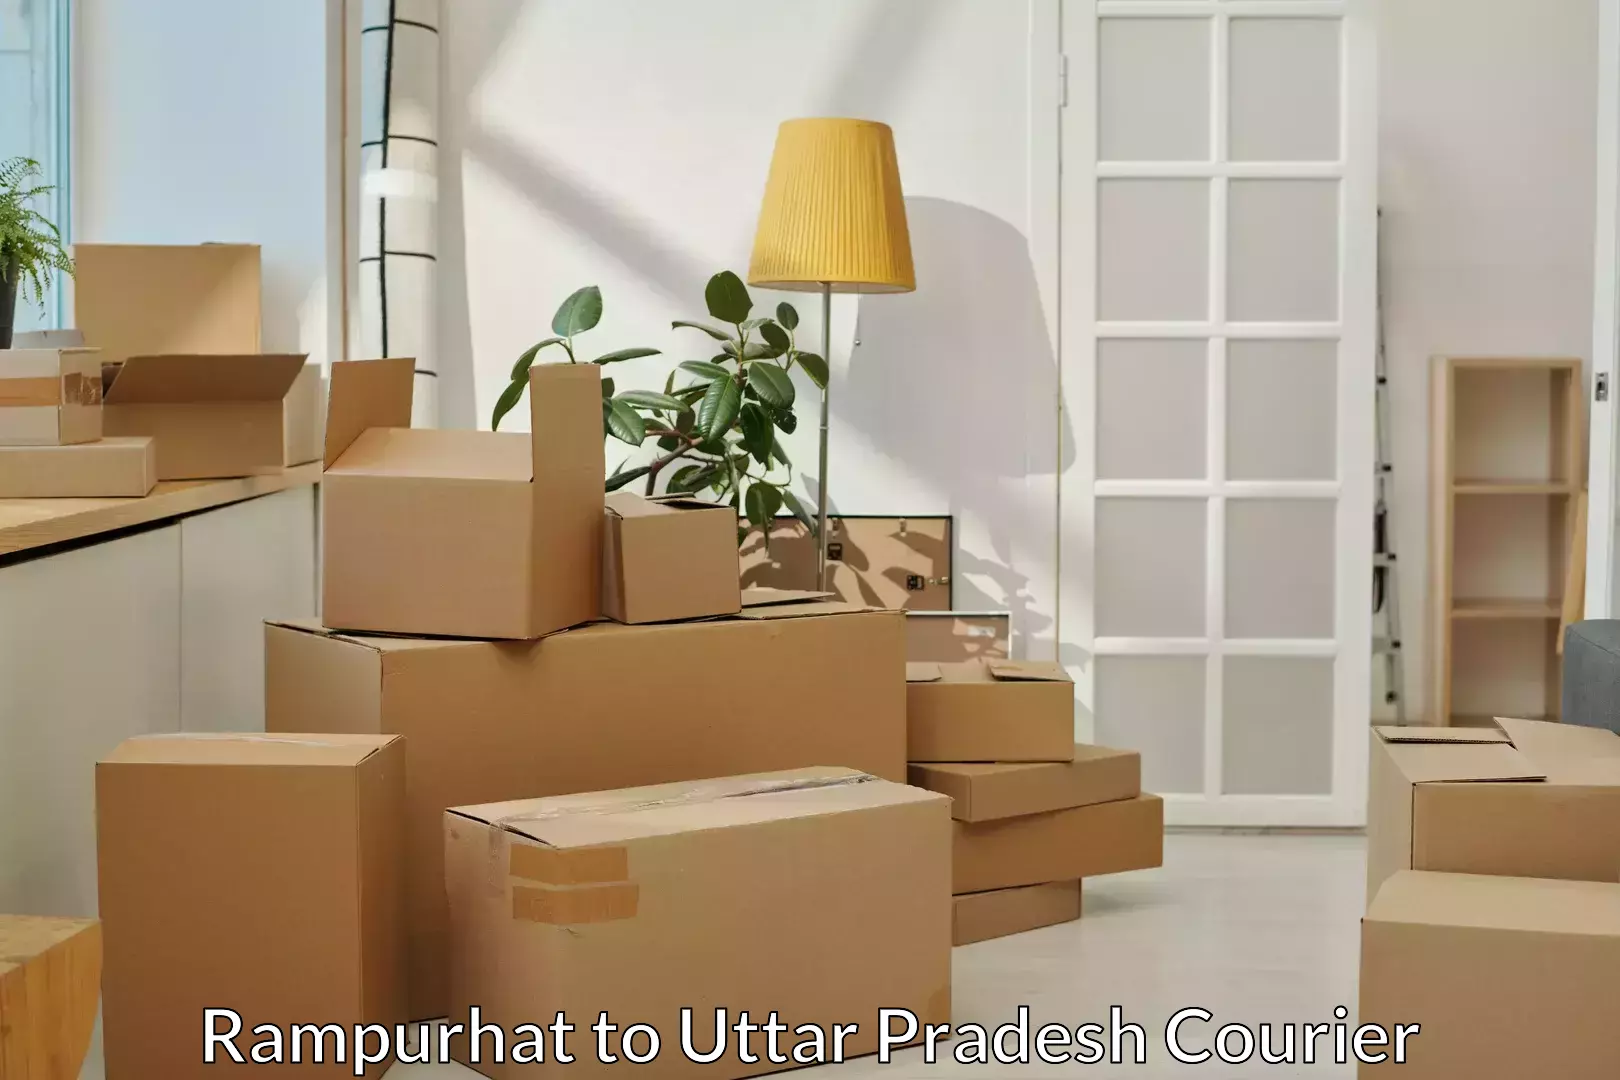 Furniture moving plans Rampurhat to Anupshahar